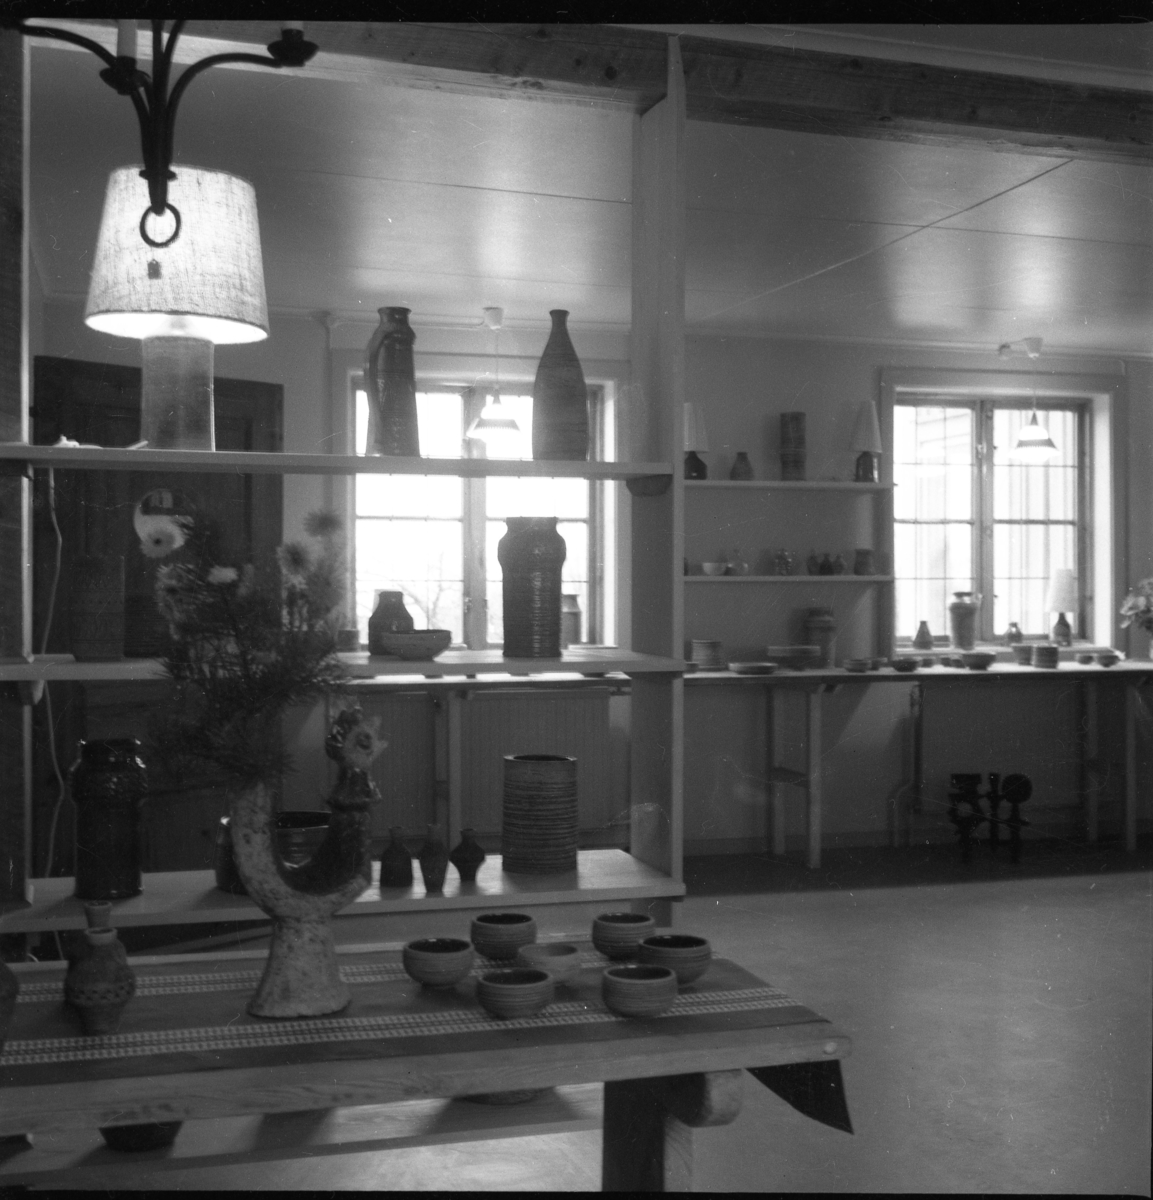 Olle "Keramik-Olle" Hermanssons keramikbutik, Brahegatan 37.